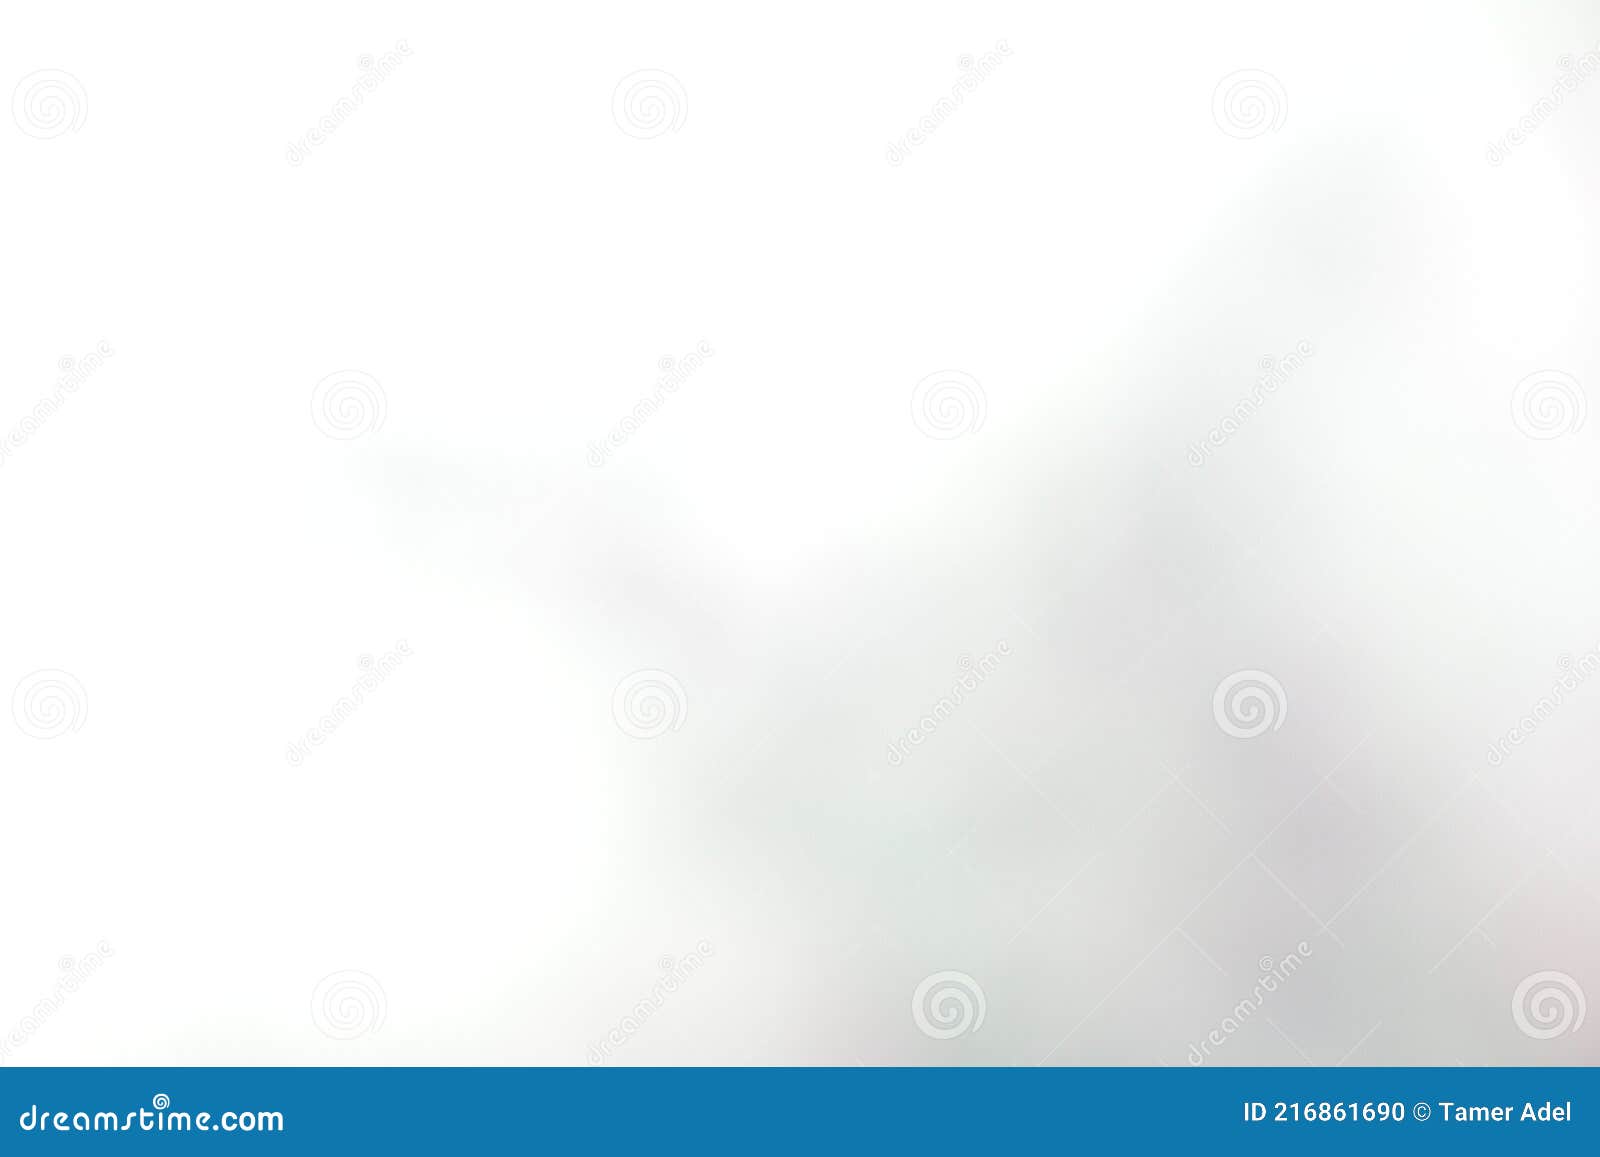 градиентный серый фон для обоев и конструкций размытый абстрактный серый градиент пастельный фон Стоковое Фото - изображение насчитывающей красивейшее, цветасто: 216861690